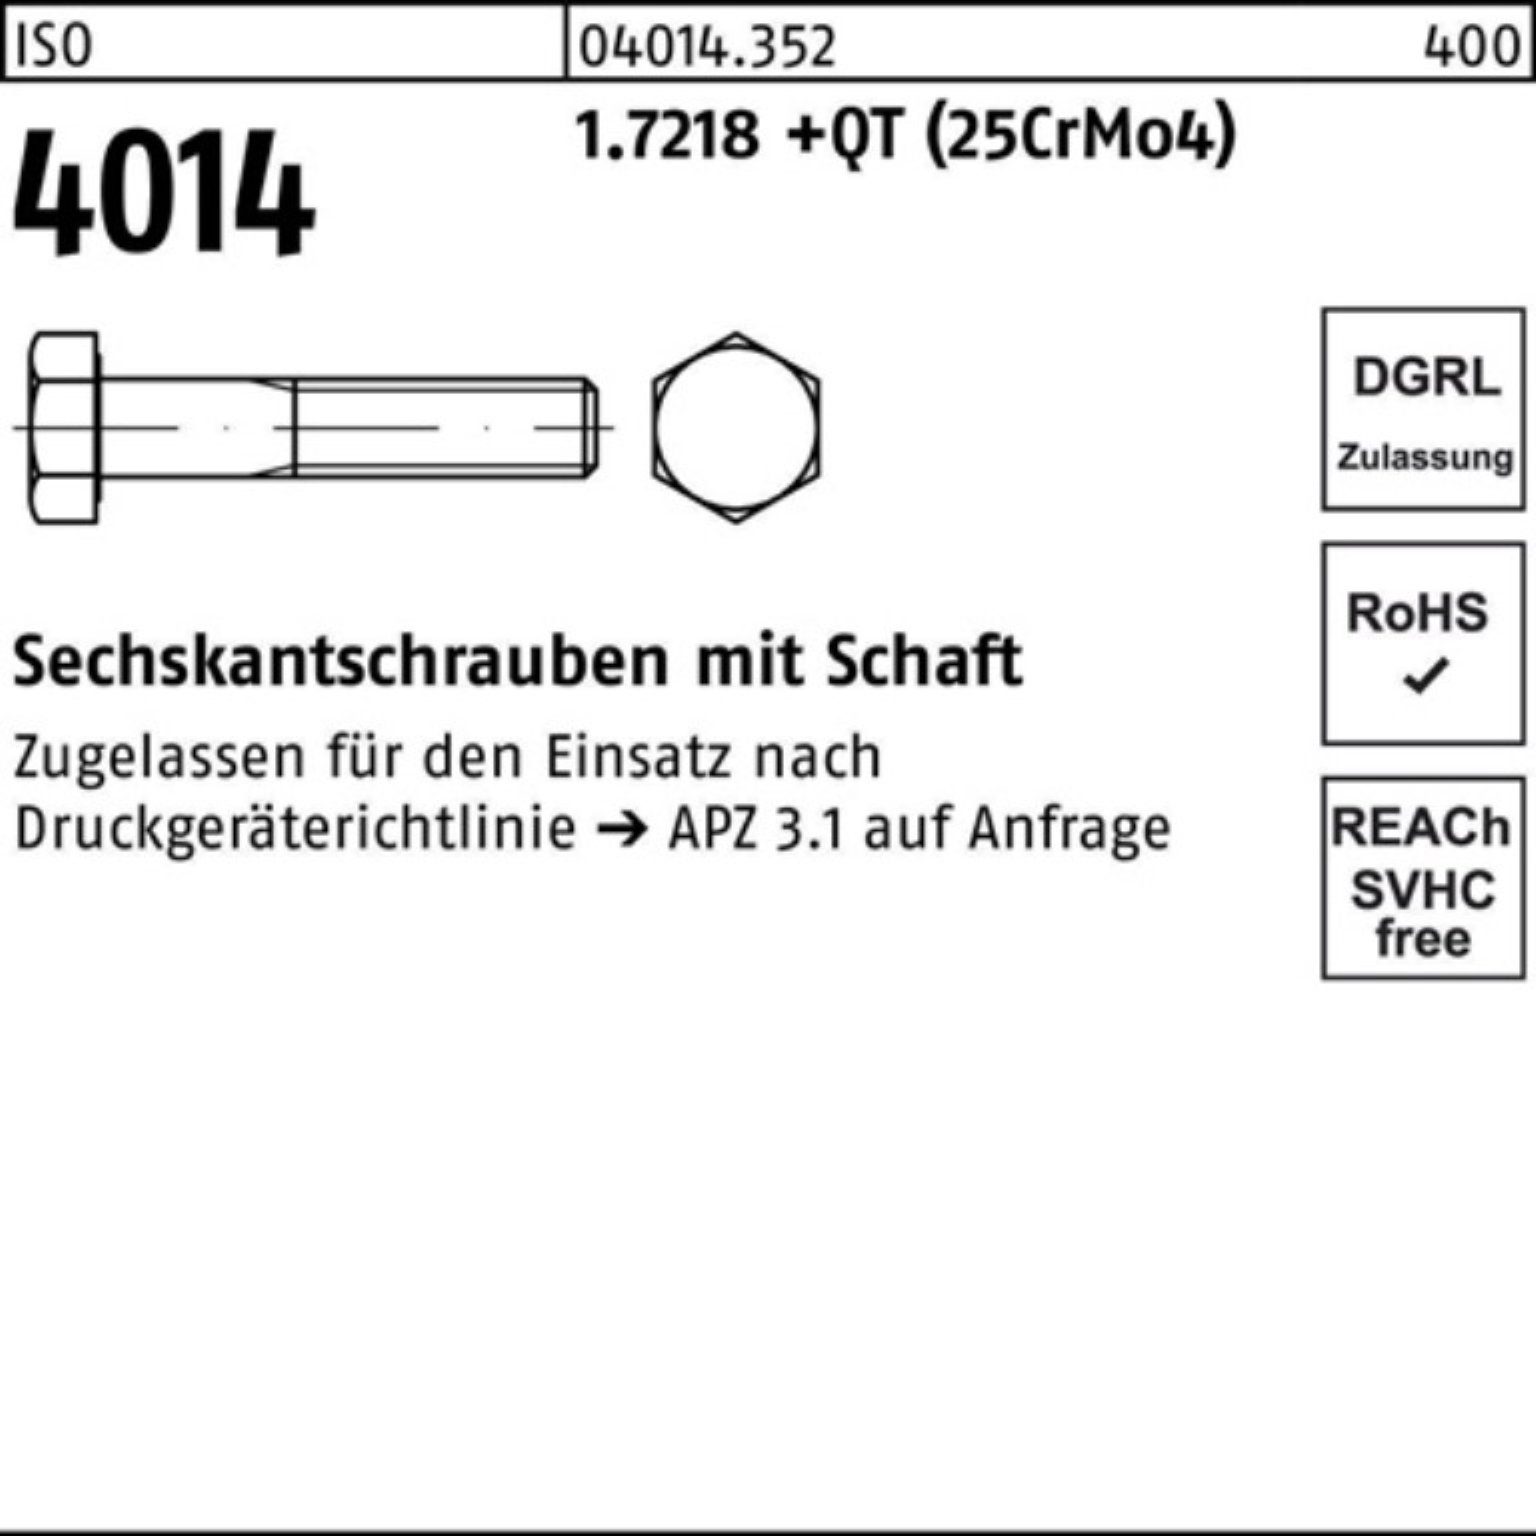 Pack Sechskantschraube Bufab M33x 165 ISO Schaft +QT 1.7218 (25Cr 4014 100er Sechskantschraube